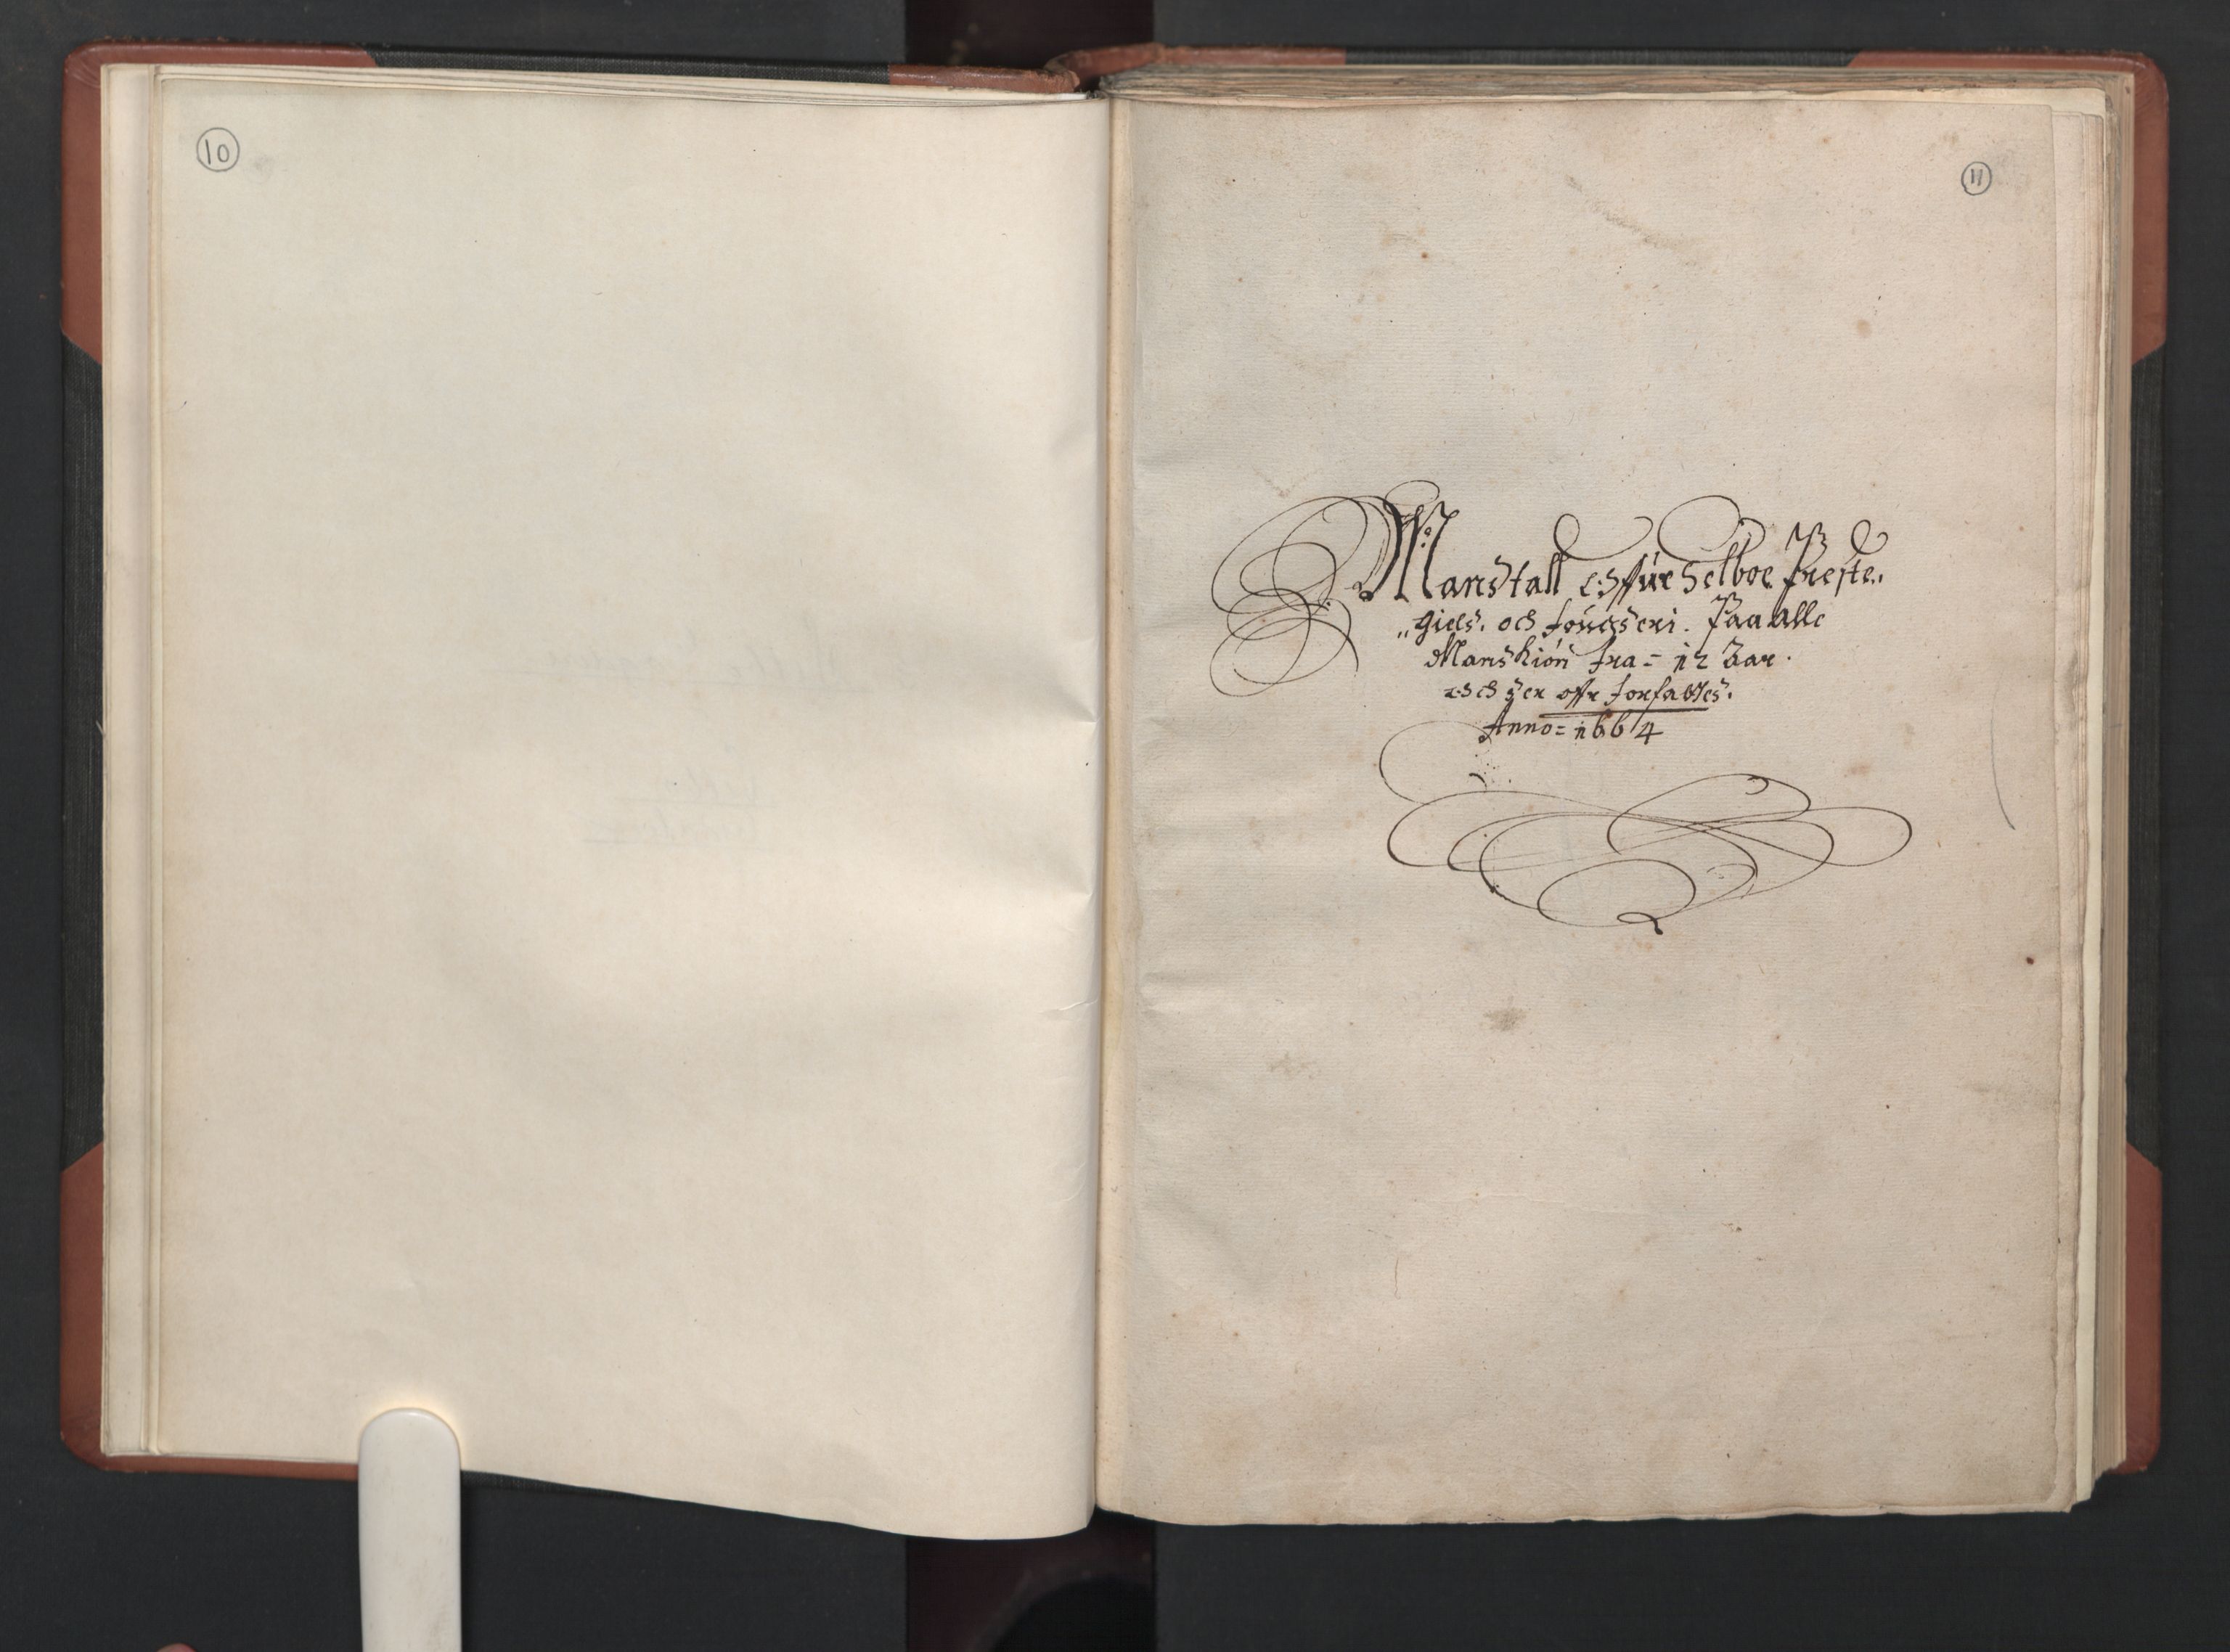 RA, Fogdenes og sorenskrivernes manntall 1664-1666, nr. 19: Fosen fogderi, Inderøy fogderi, Selbu fogderi, Namdal fogderi og Stjørdal fogderi, 1664-1665, s. 10-11